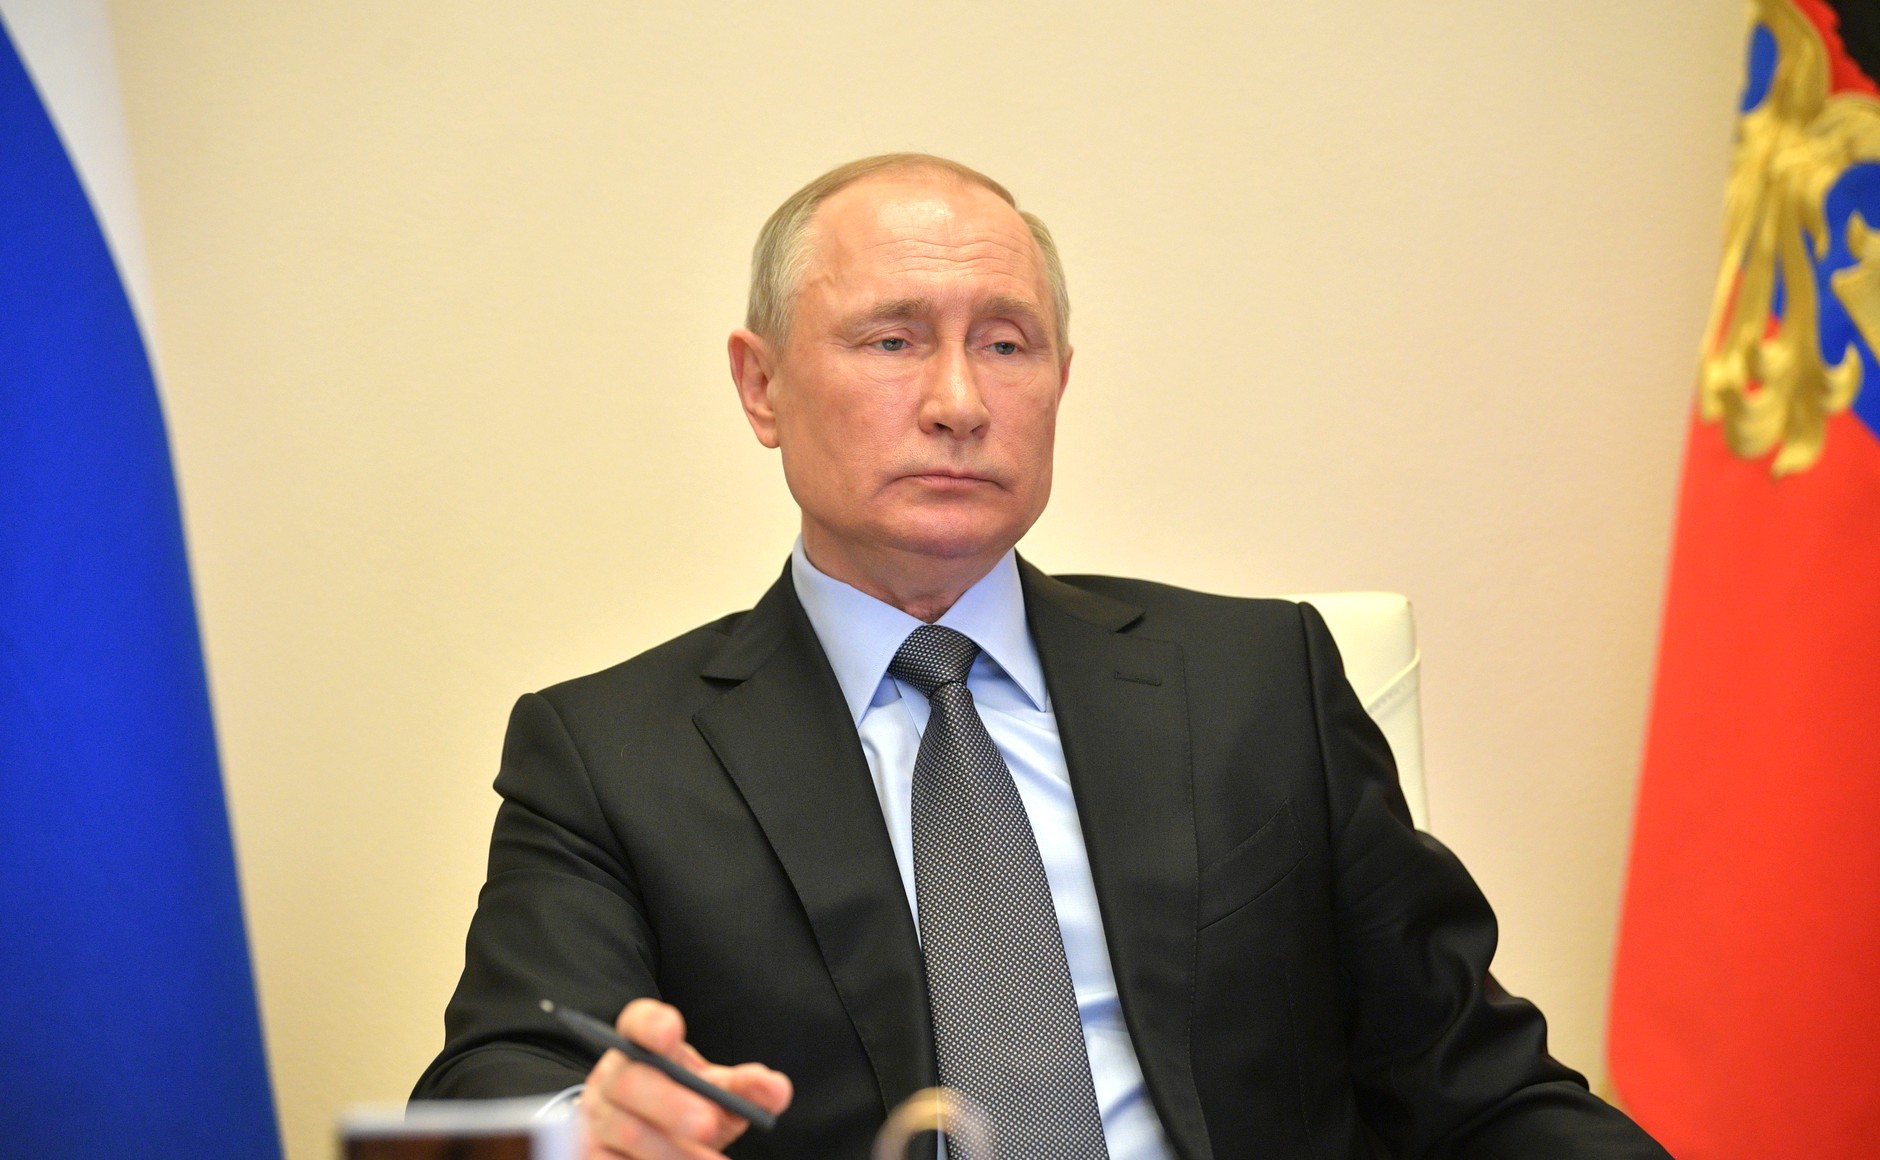 Стройкомплекс должен стать локомотивом восстановления экономики - Путин